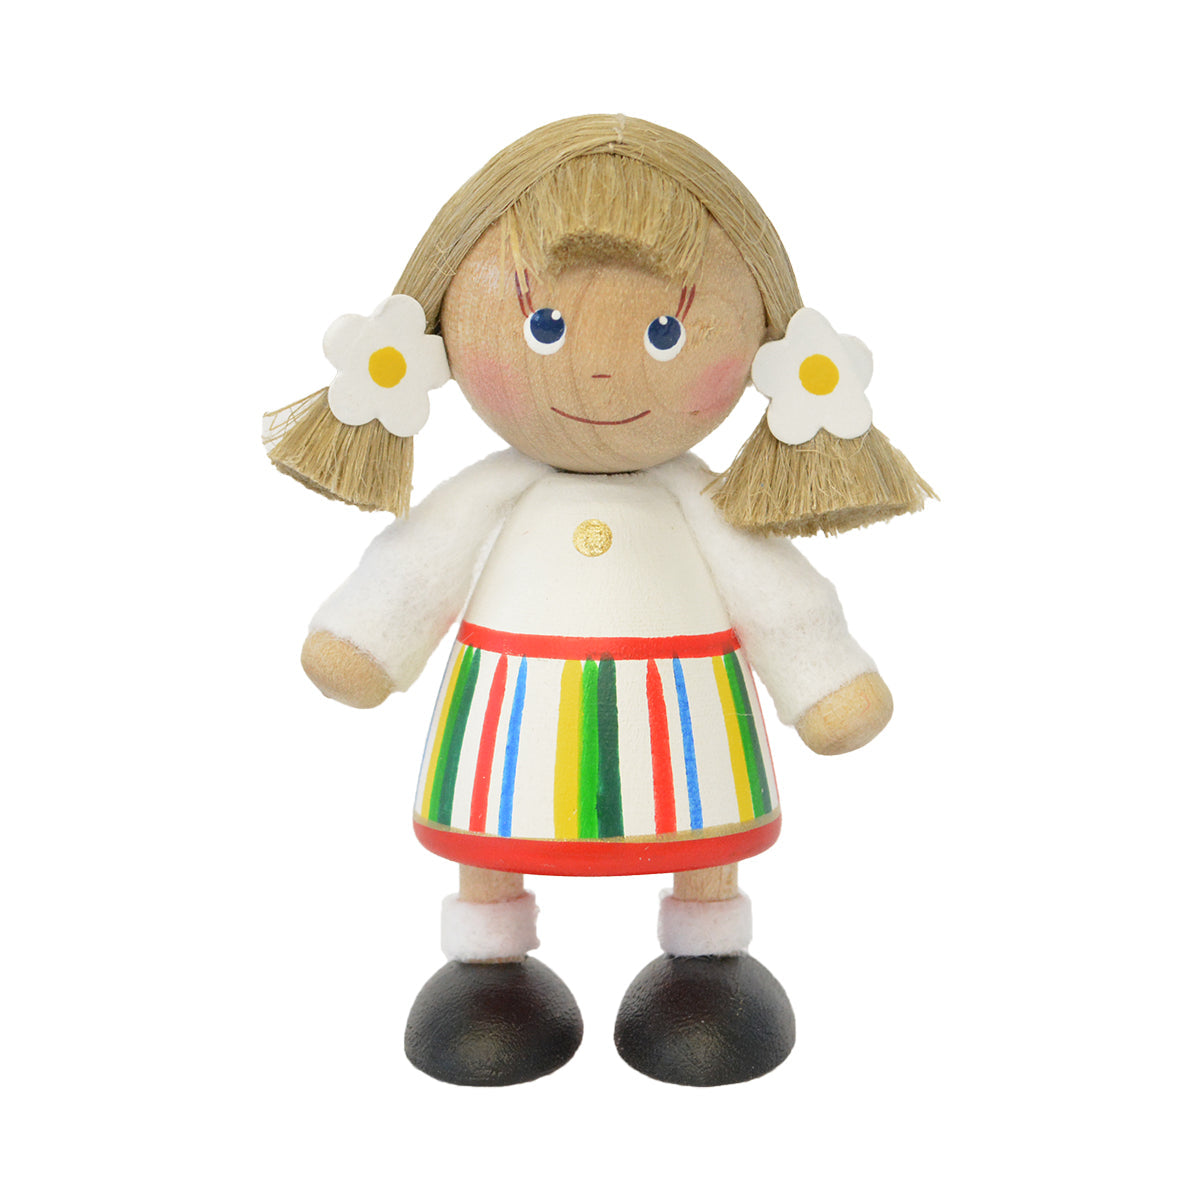 NORDIC GIFT ノルディック・ギフト 木製人形 民族衣装の女の子( ホワイト×ホワイト / レッド / グリーン )